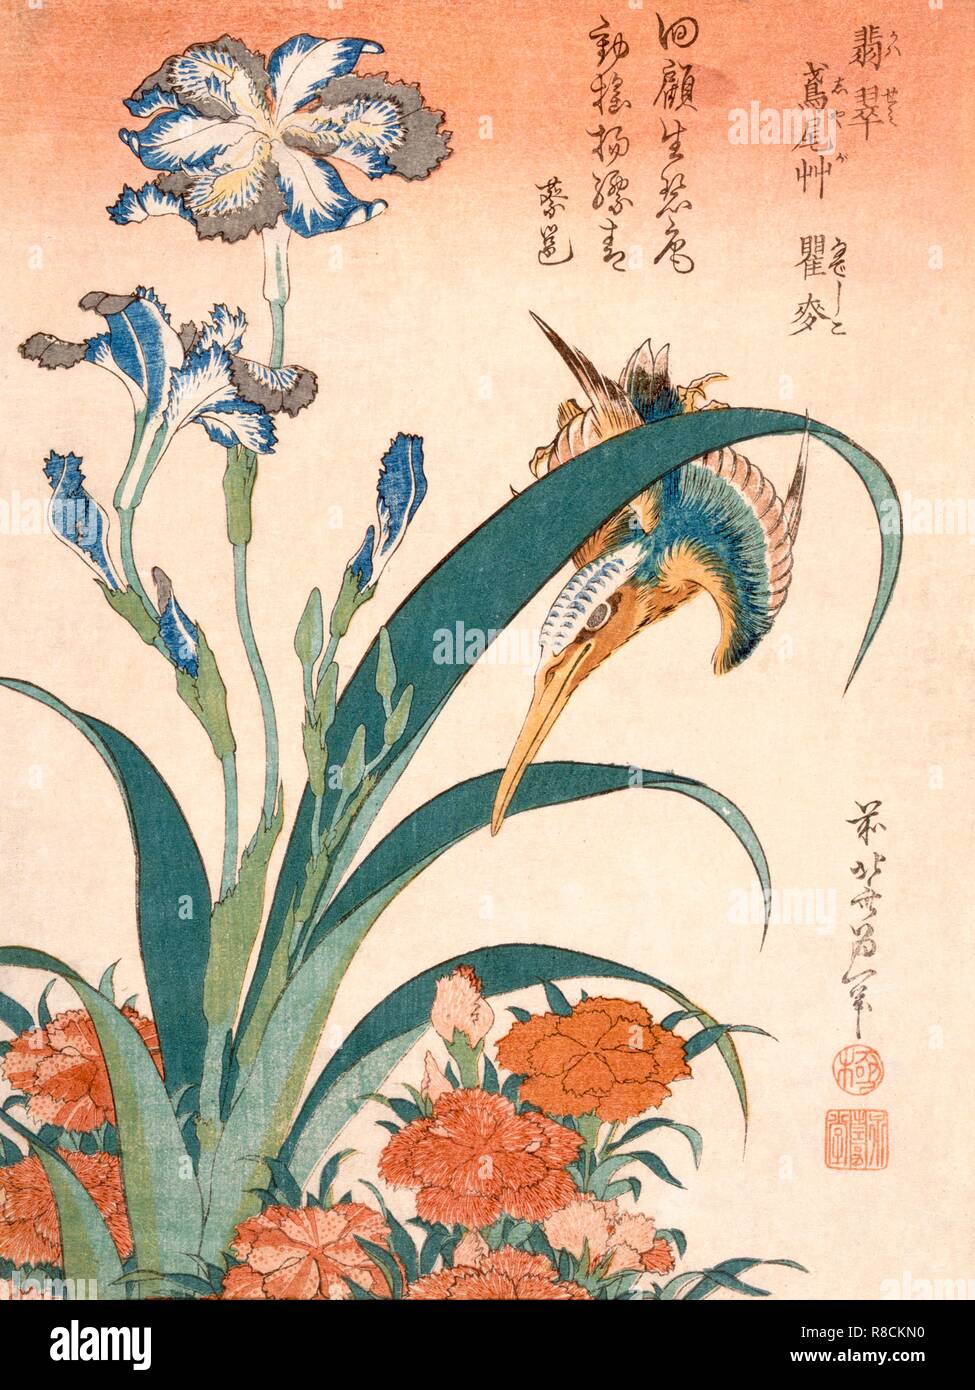 Kingfisher, Irises and Pinks, published c1834. Creator: Katsushika Hokusai (1760-1849). Stock Photo